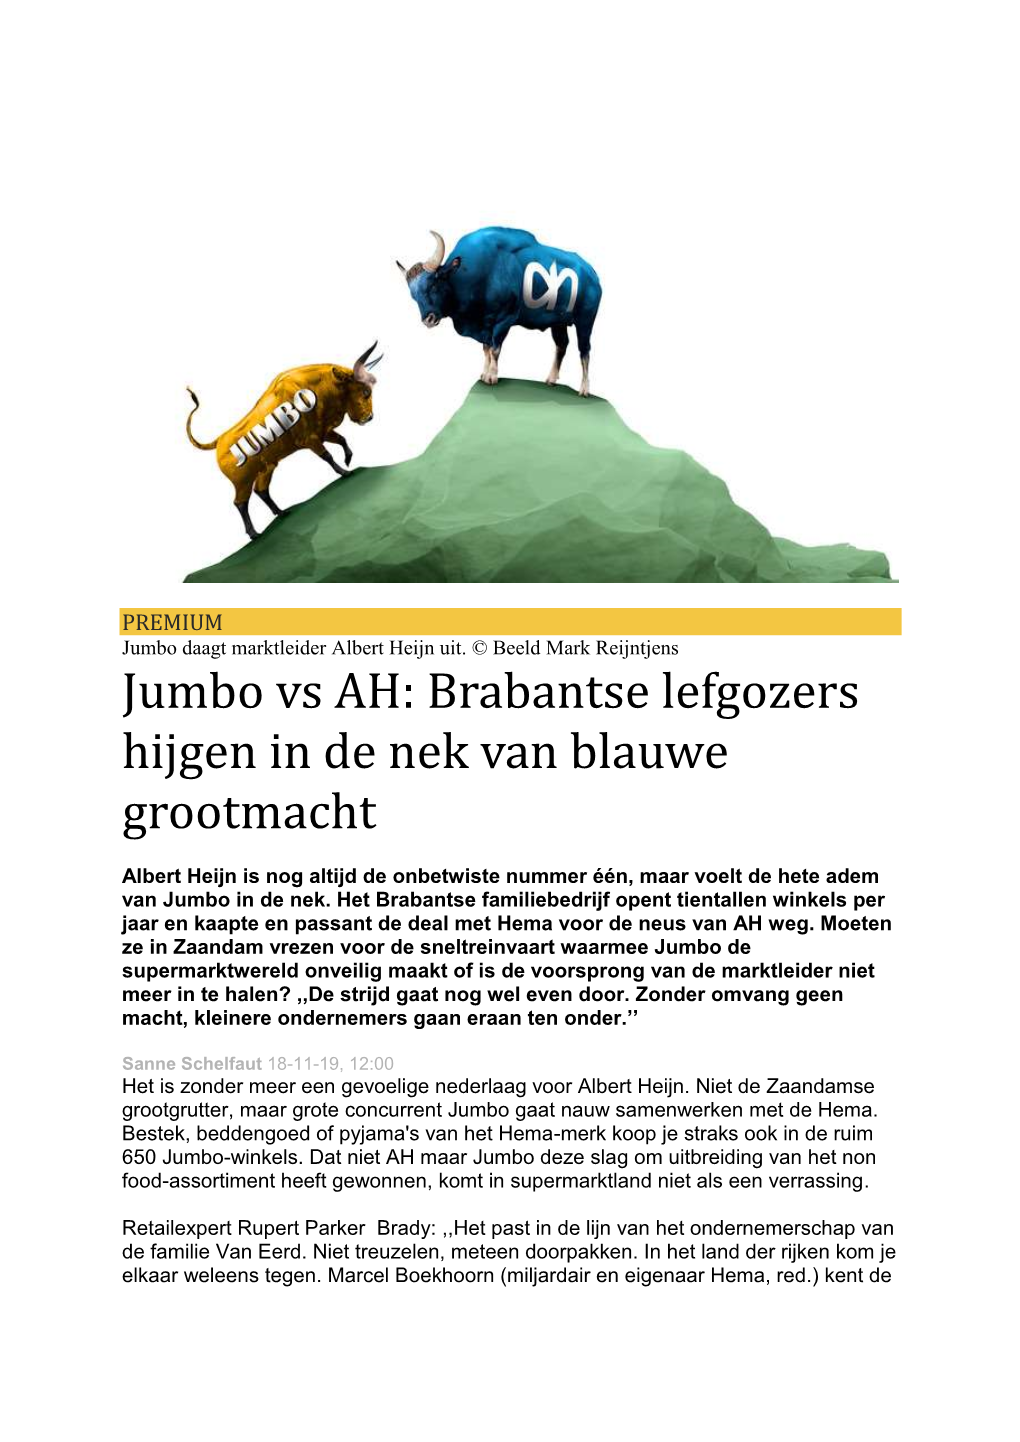 Jumbo Vs AH: Brabantse Lefgozers Hijgen in De Nek Van Blauwe Grootmacht